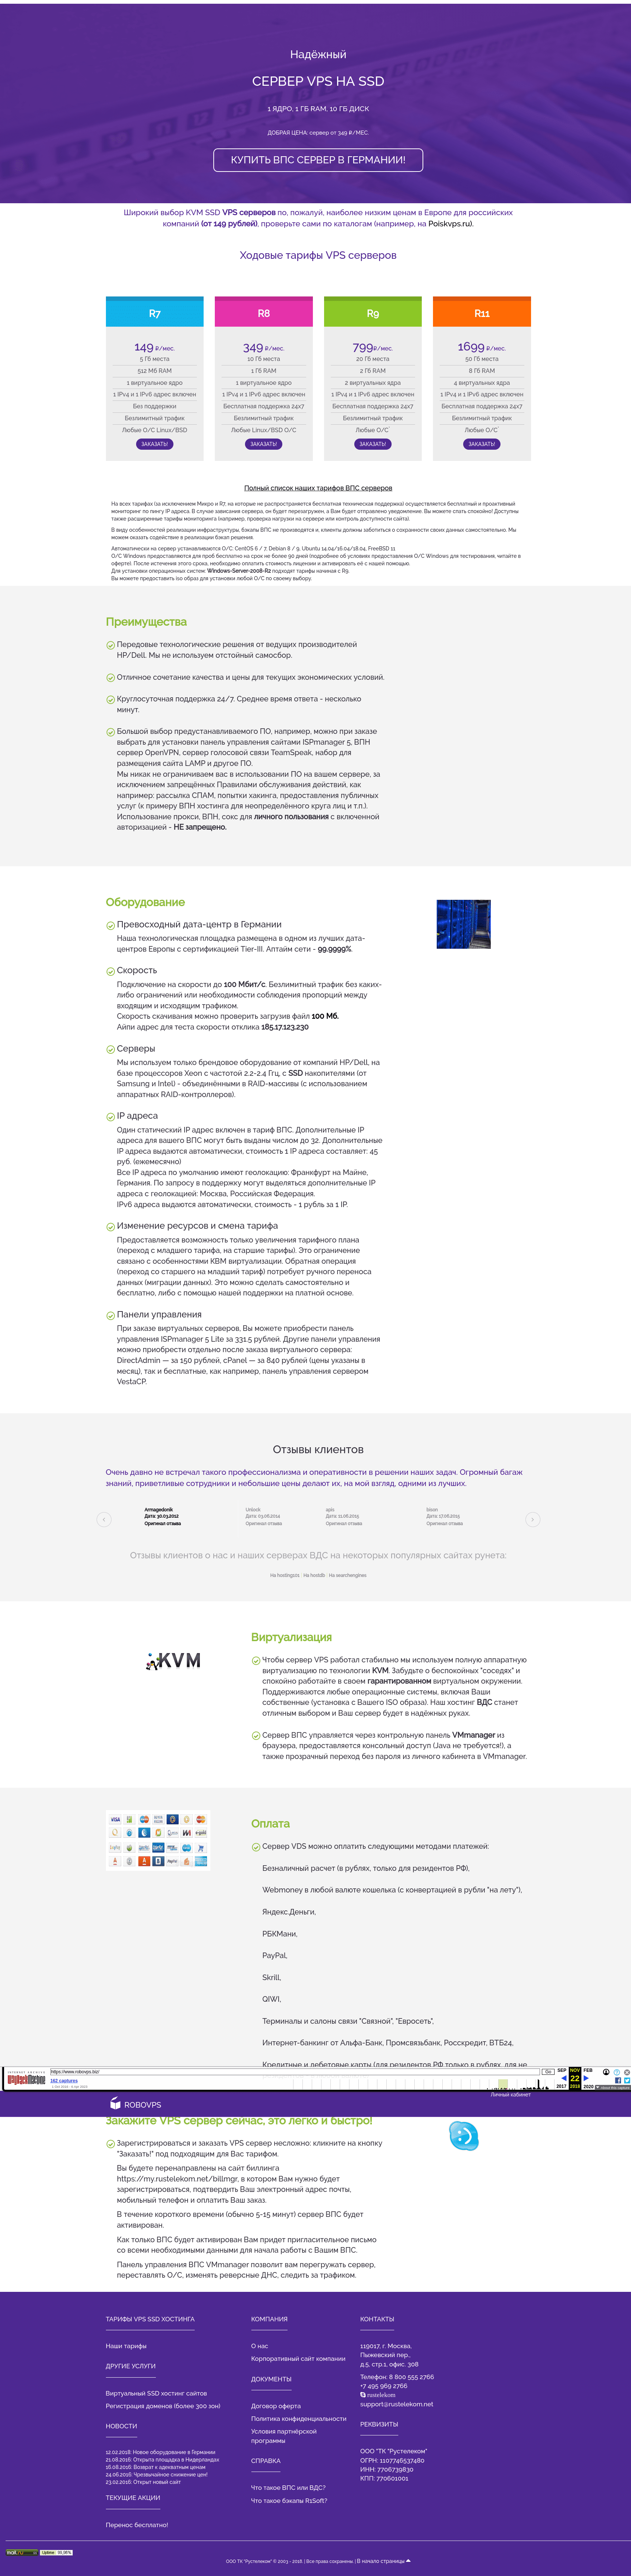 RoboVPS.biz - 2018 version of the site